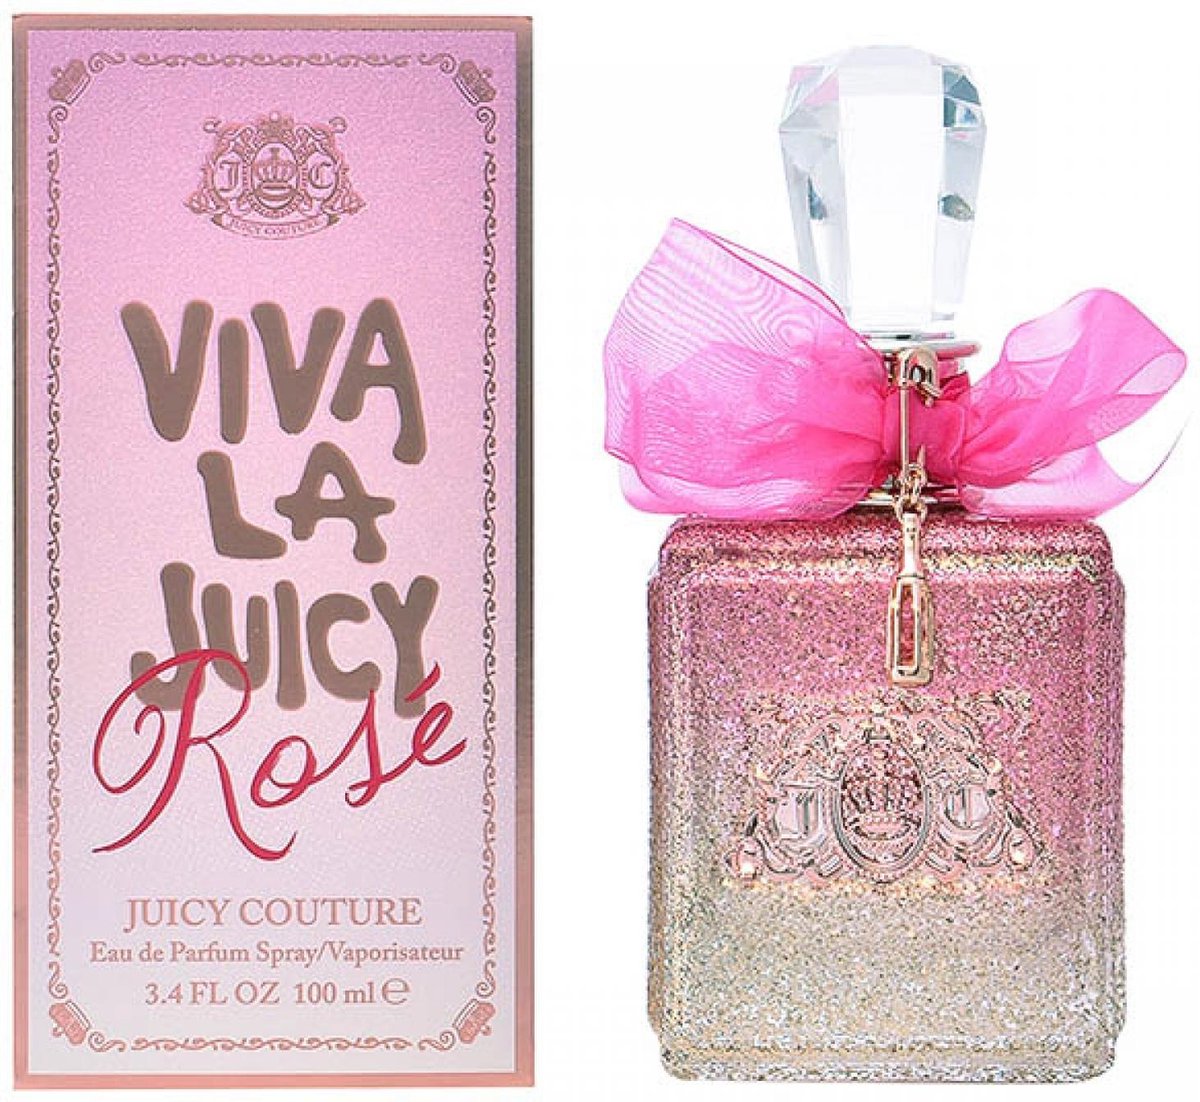 Juicy Couture Eau De Parfum Viva La Juicy Rose 100 ml - Voor Vrouwen